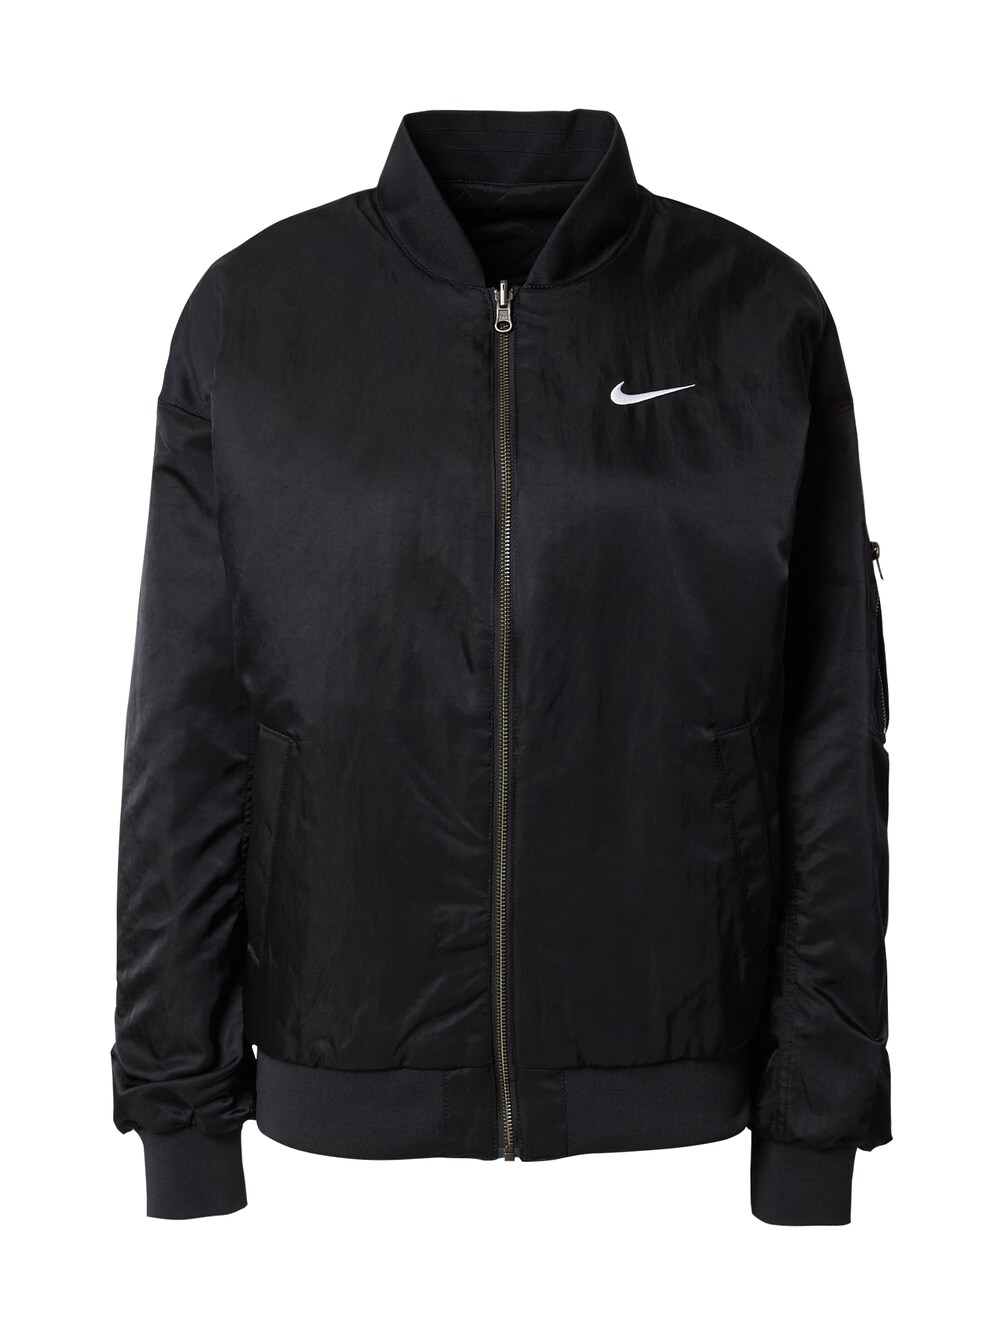 Межсезонная куртка Nike, черный